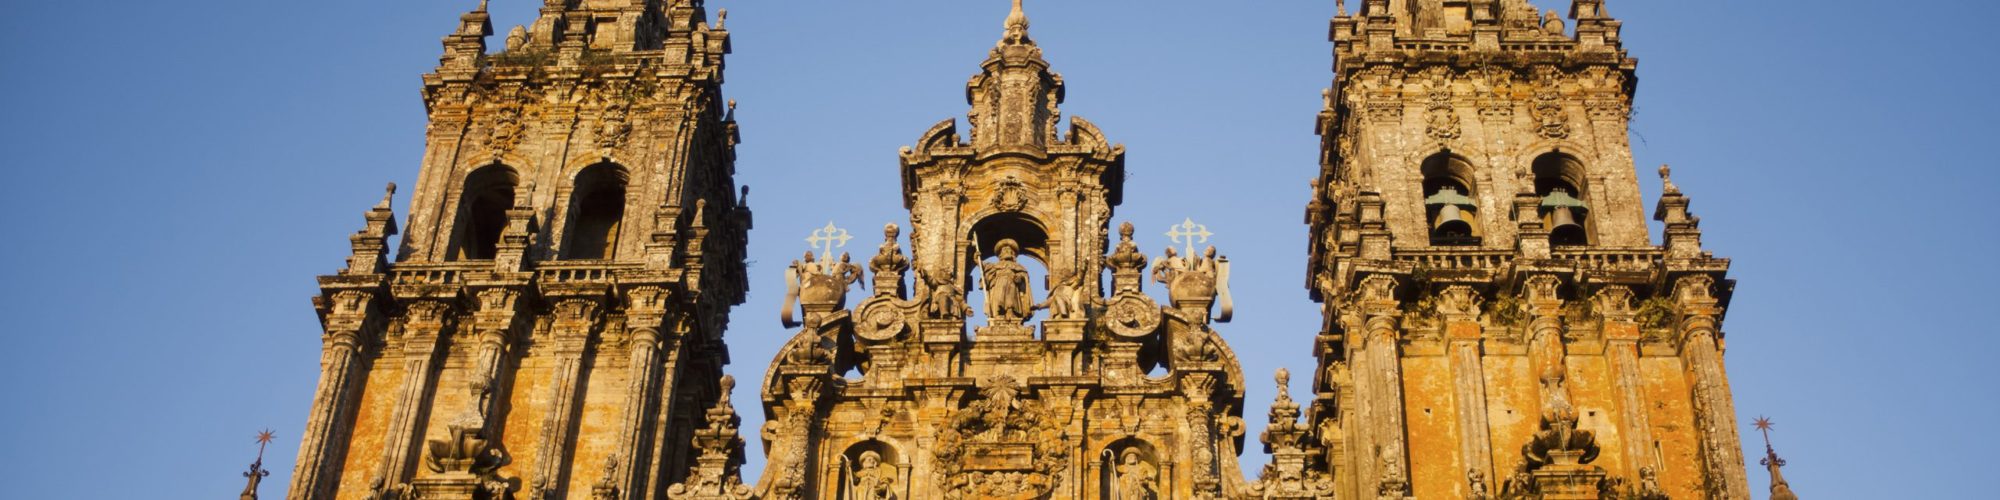 Santiago De Compostela travel agents packages deals